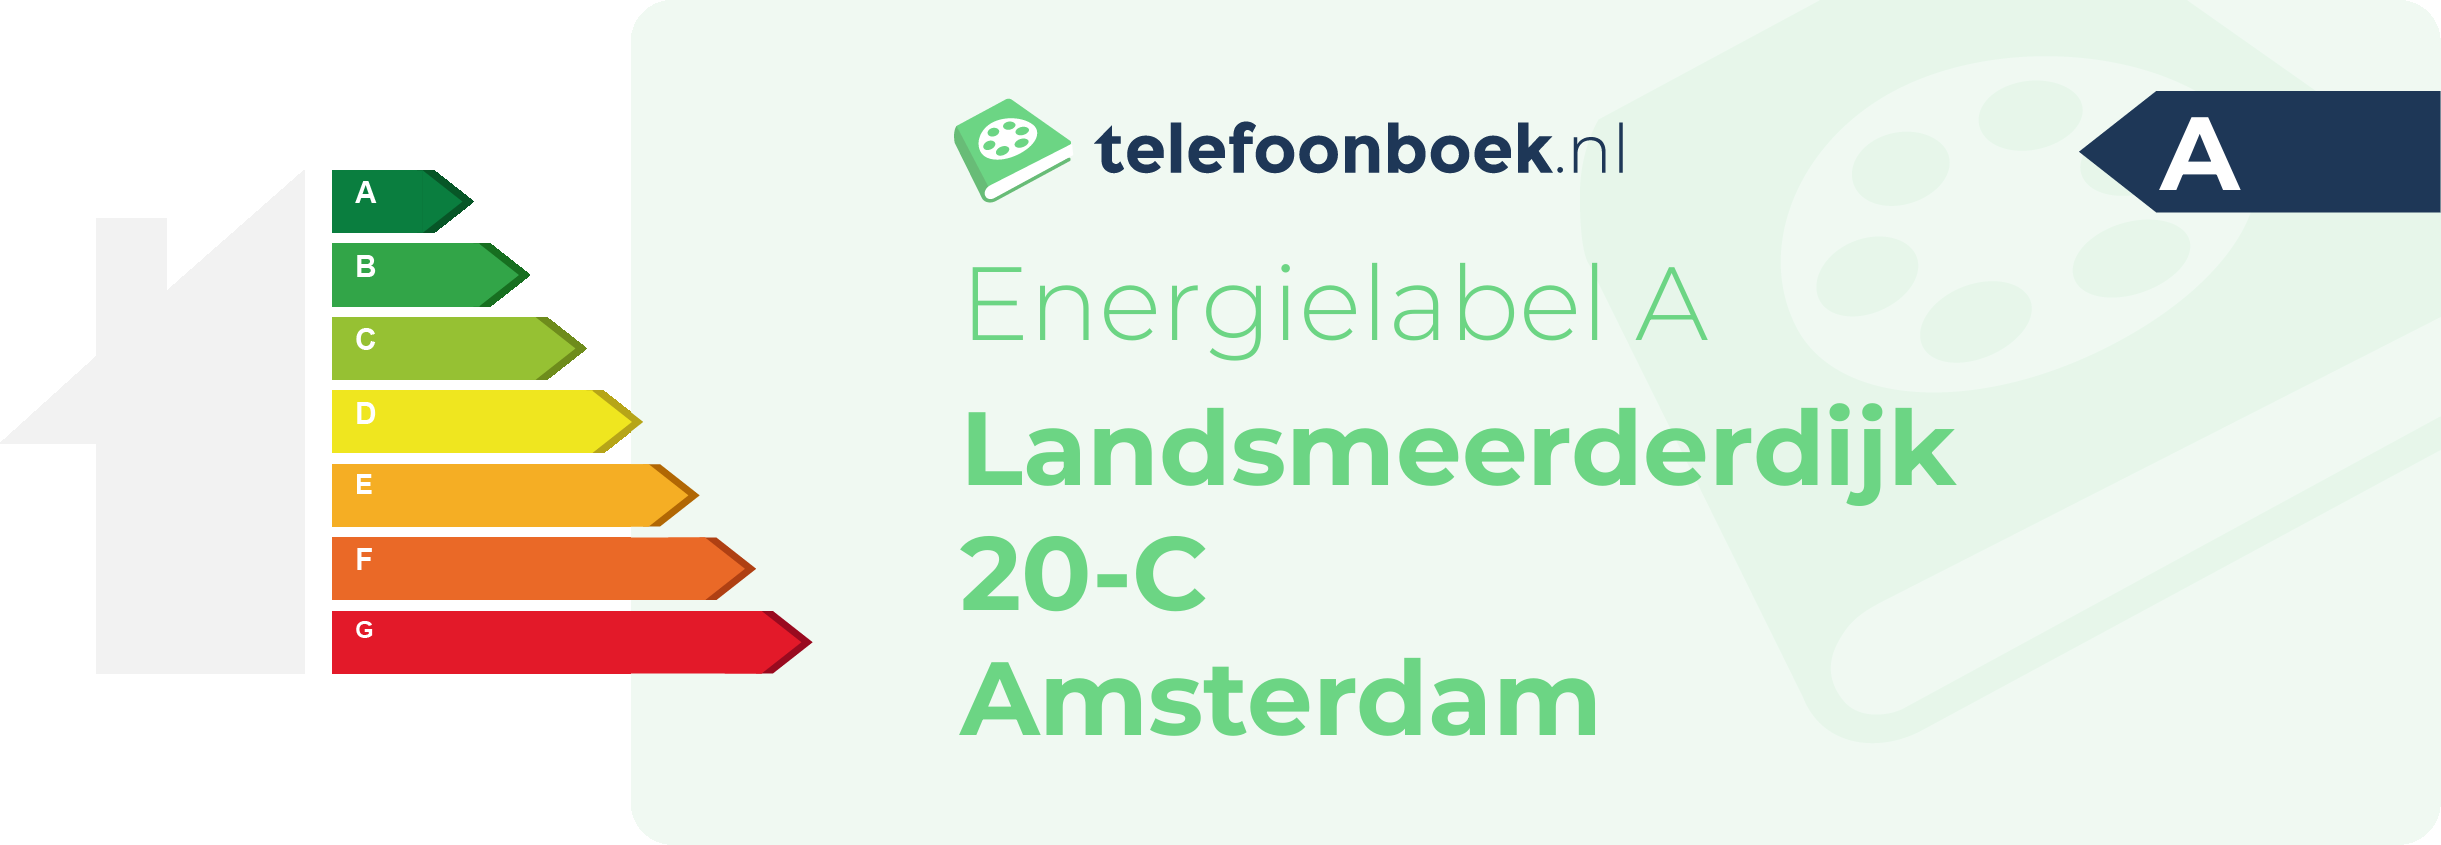 Energielabel Landsmeerderdijk 20-C Amsterdam